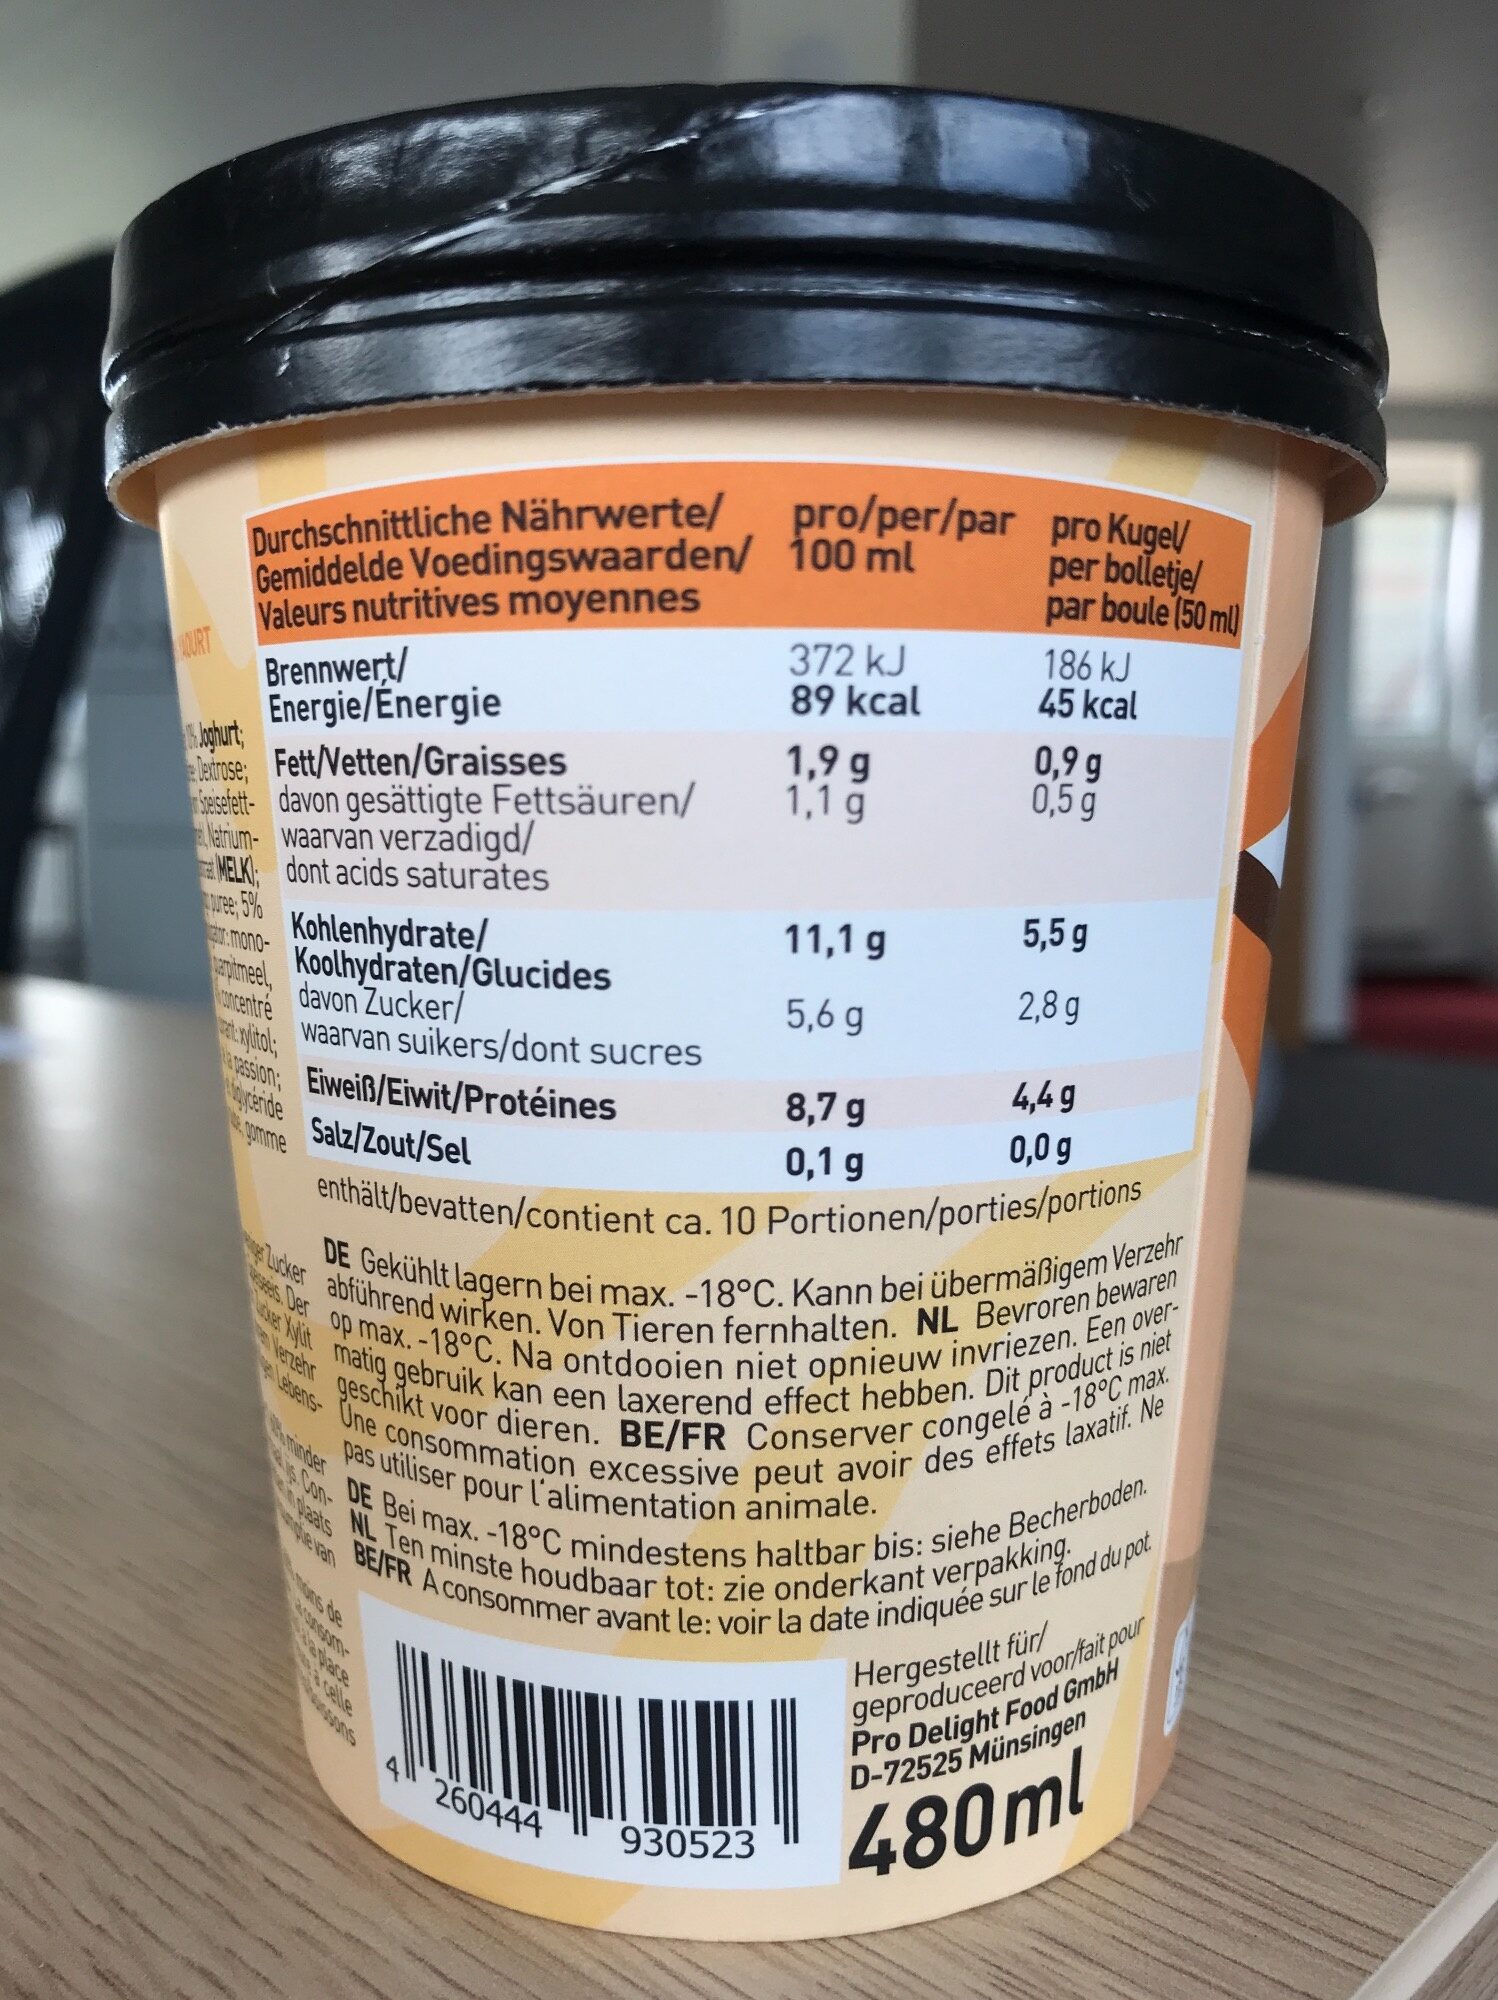 Pro Delight Wild Mango 480 ml - Nährwertangaben